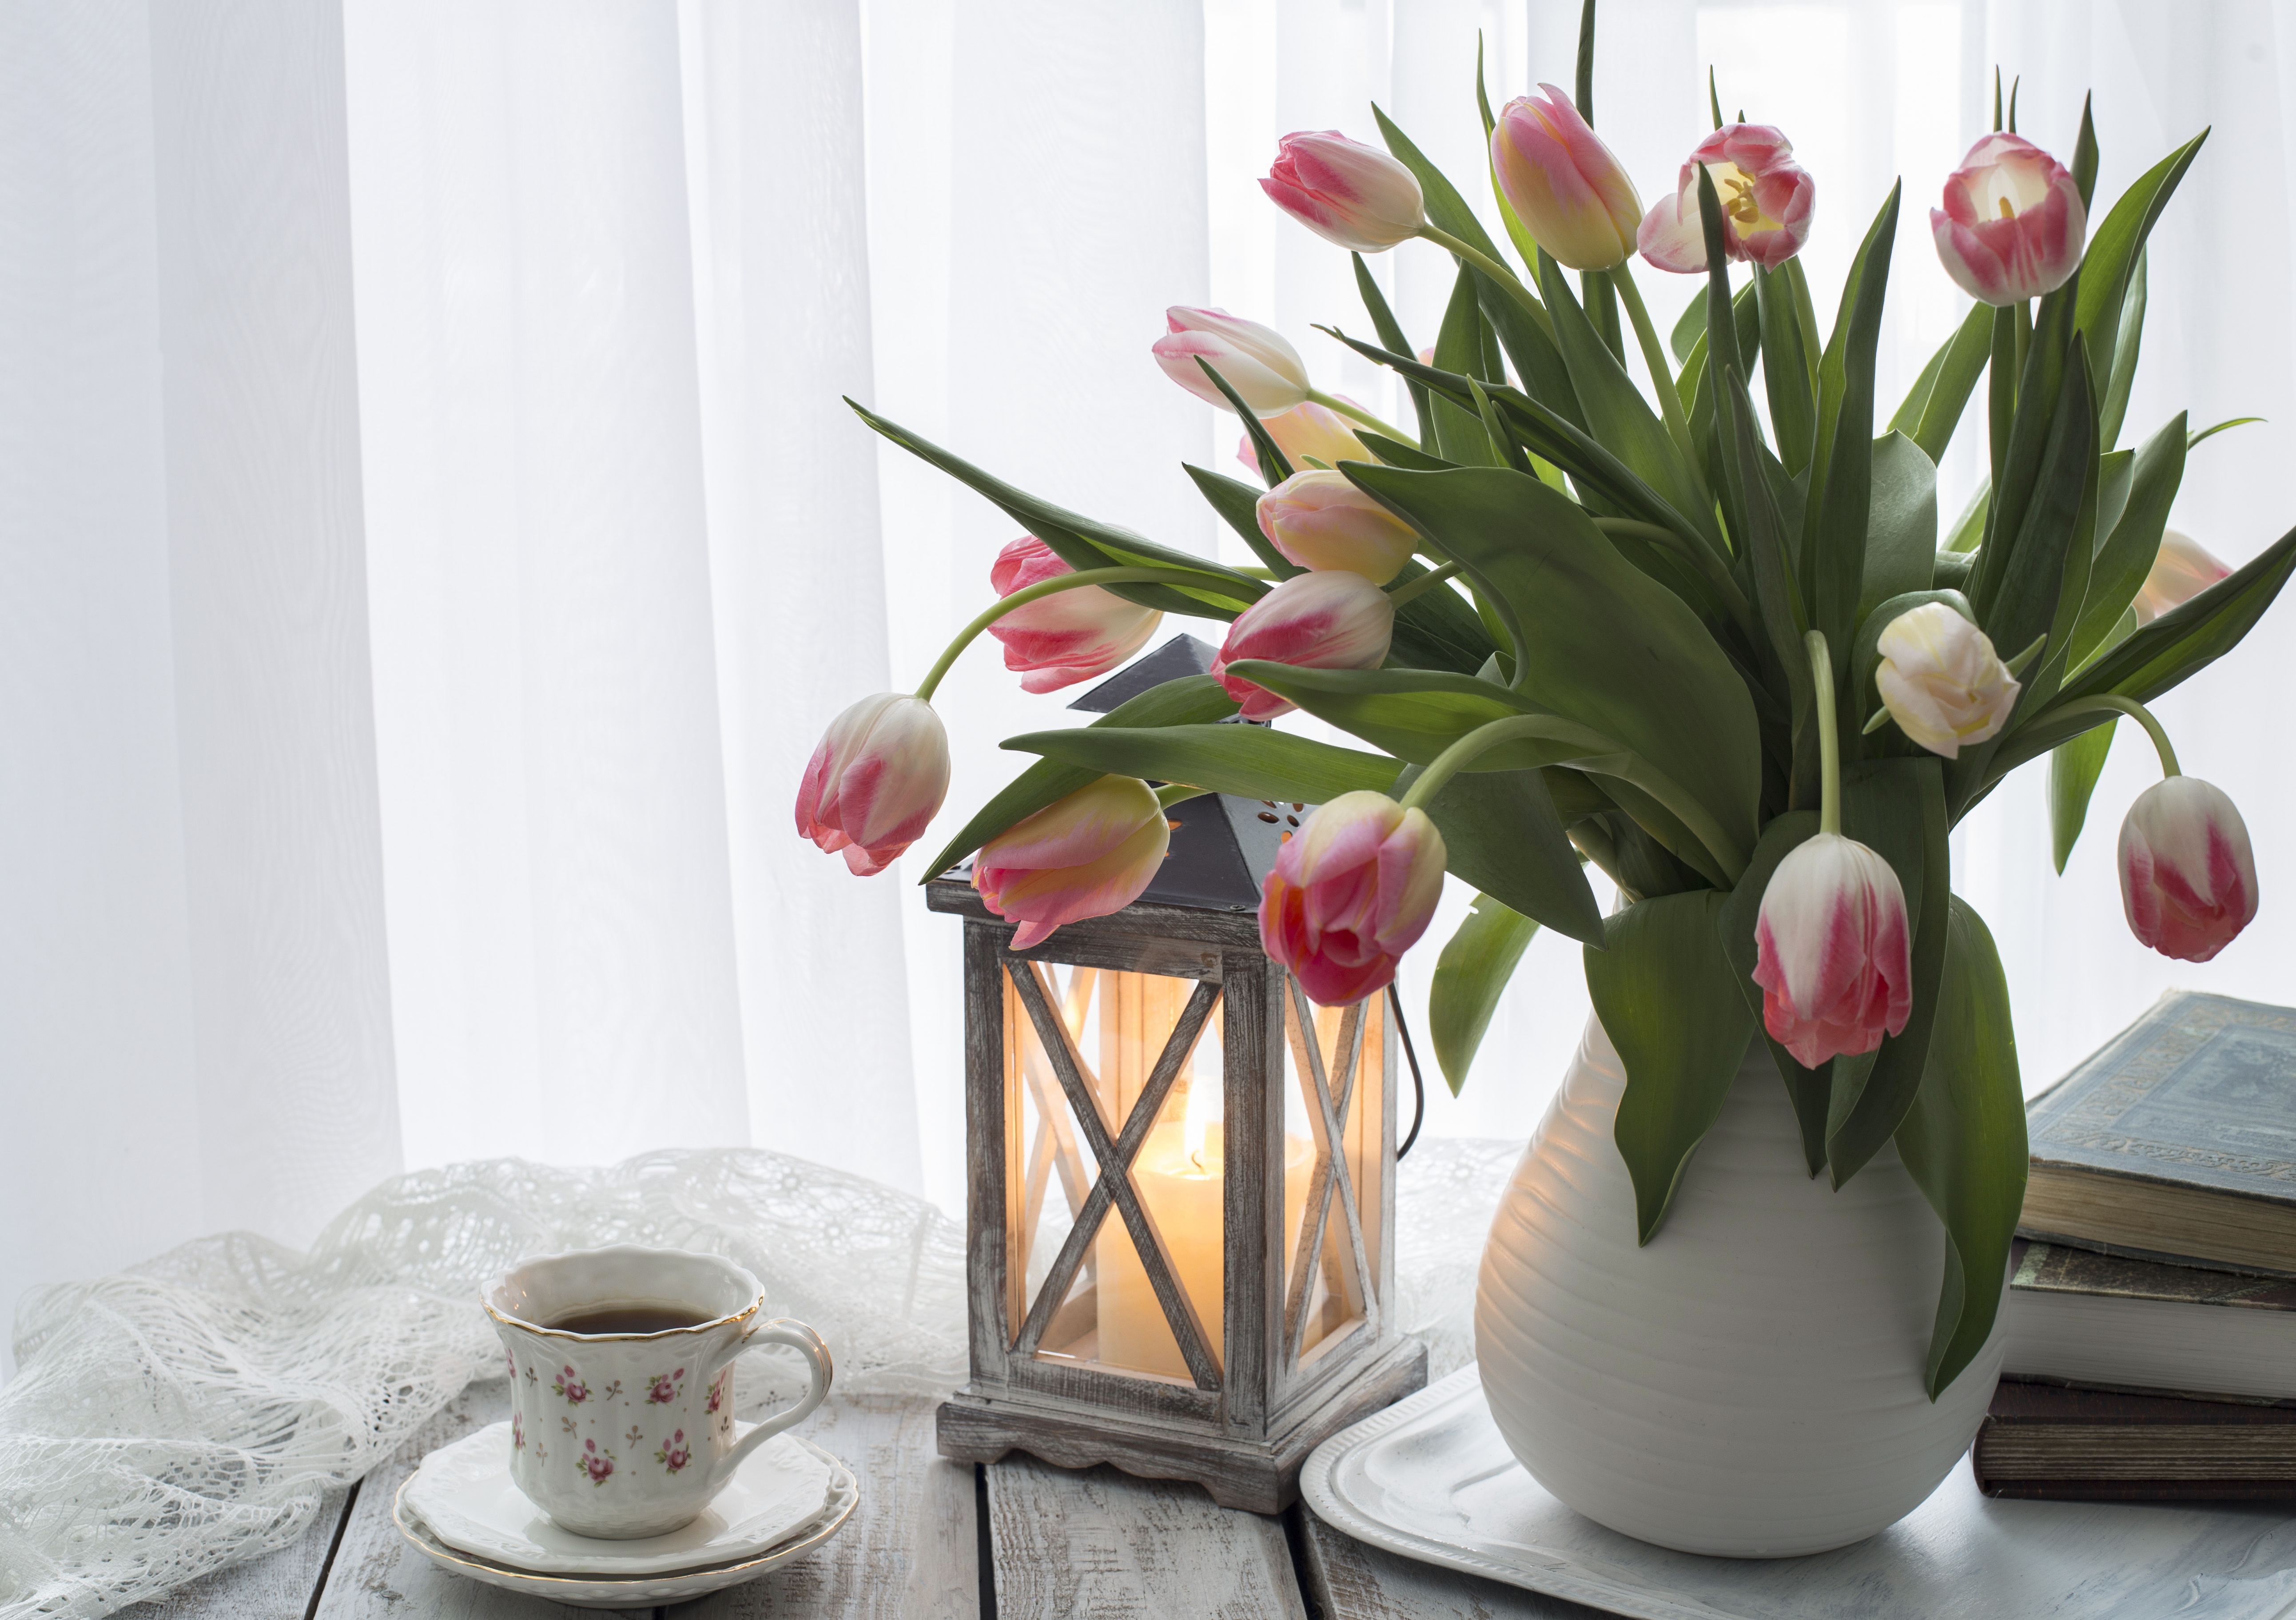 Как часто менять воду тюльпанам в вазе. Тюльпаны в вазе. Букет тюльпанов в вазе. Красивые тюльпаны в вазе. Вазы для тюльпанов.